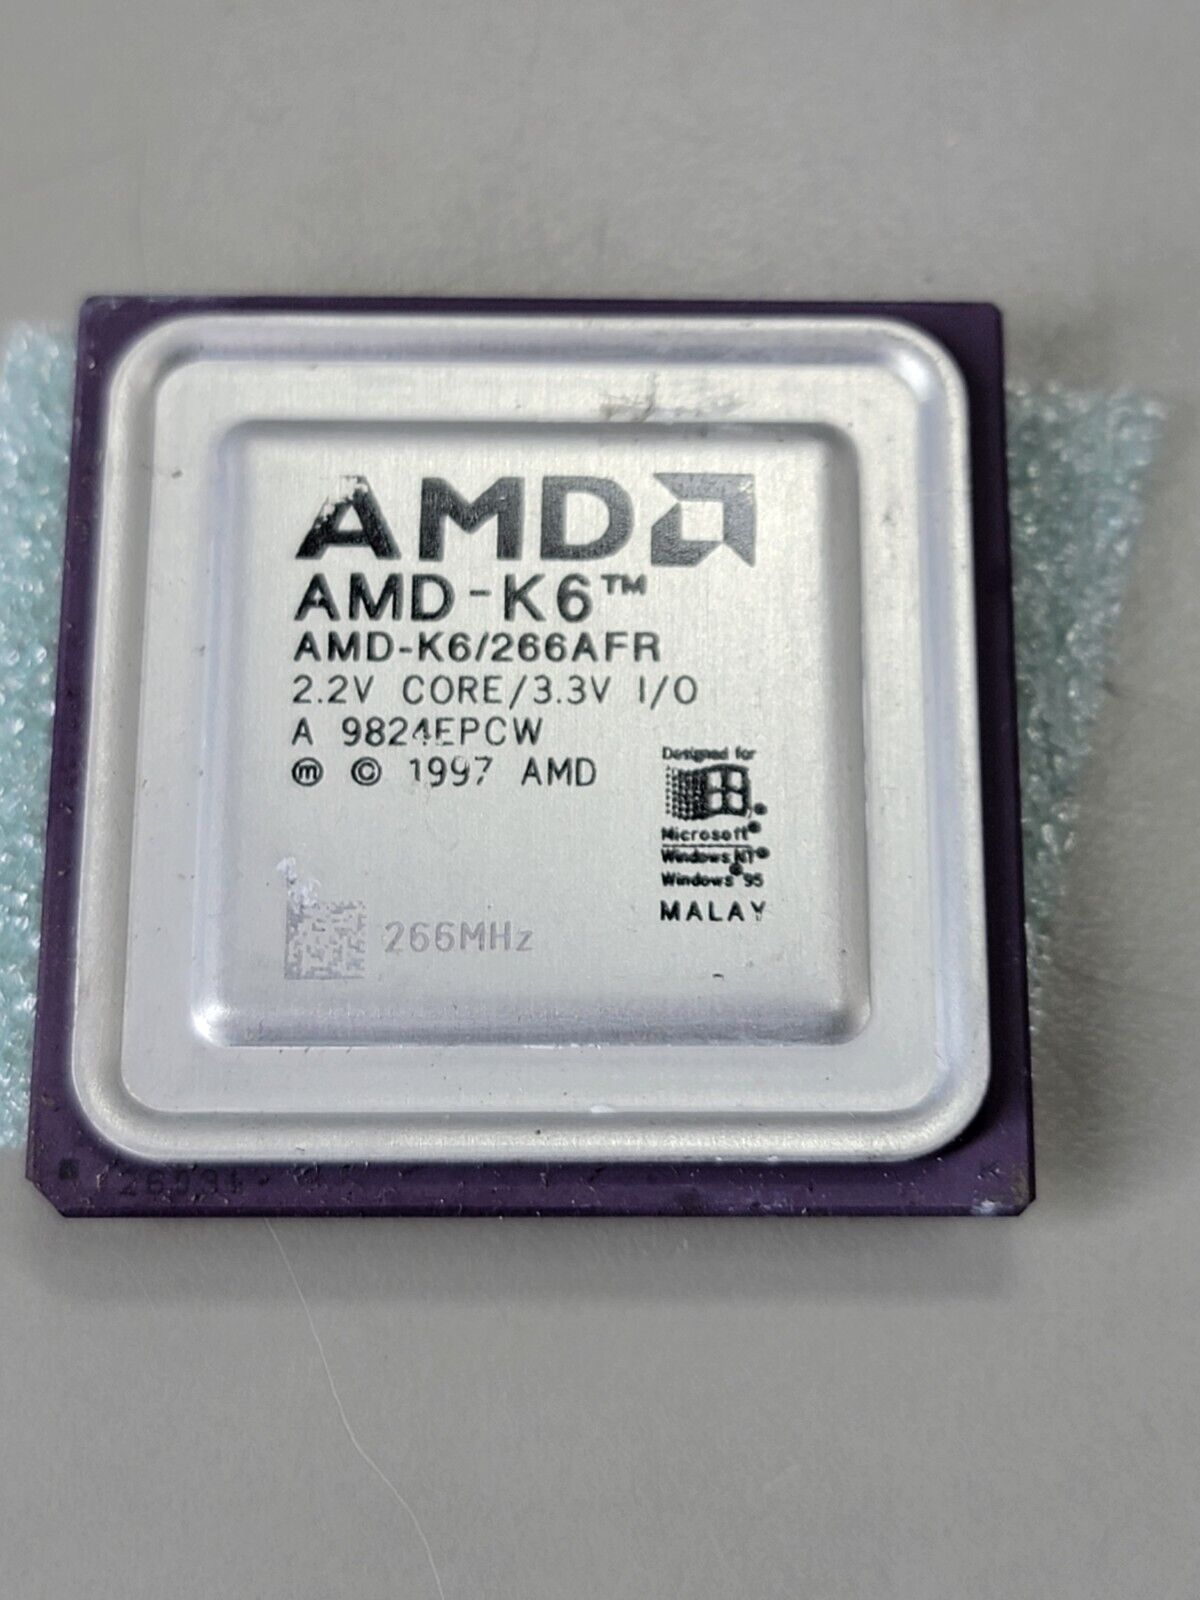 AMD-K6-266AFR K6 266 MHZ 266AFR Very Rare Vintage Processor CPU Win 95, GOLD